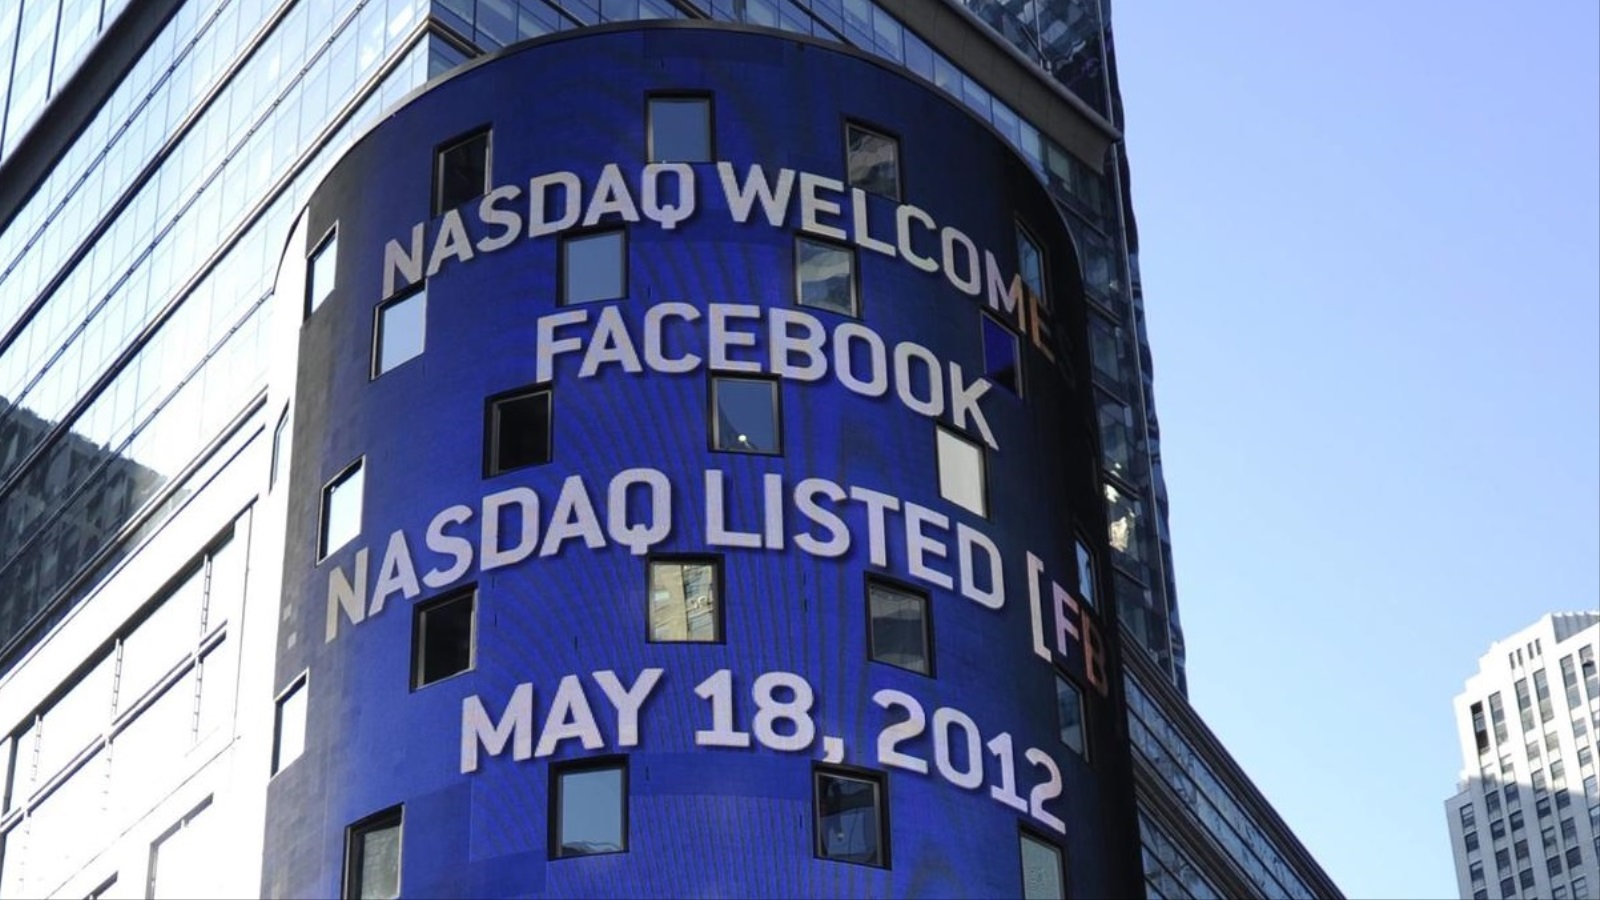 ‪فيسبوك بدأت ببيع أسهمها للجمهور يوم 18 مايو/أيار 2012‬ فيسبوك بدأت ببيع أسهمها للجمهور يوم 18 مايو/أيار 2012 (الأوروبية)